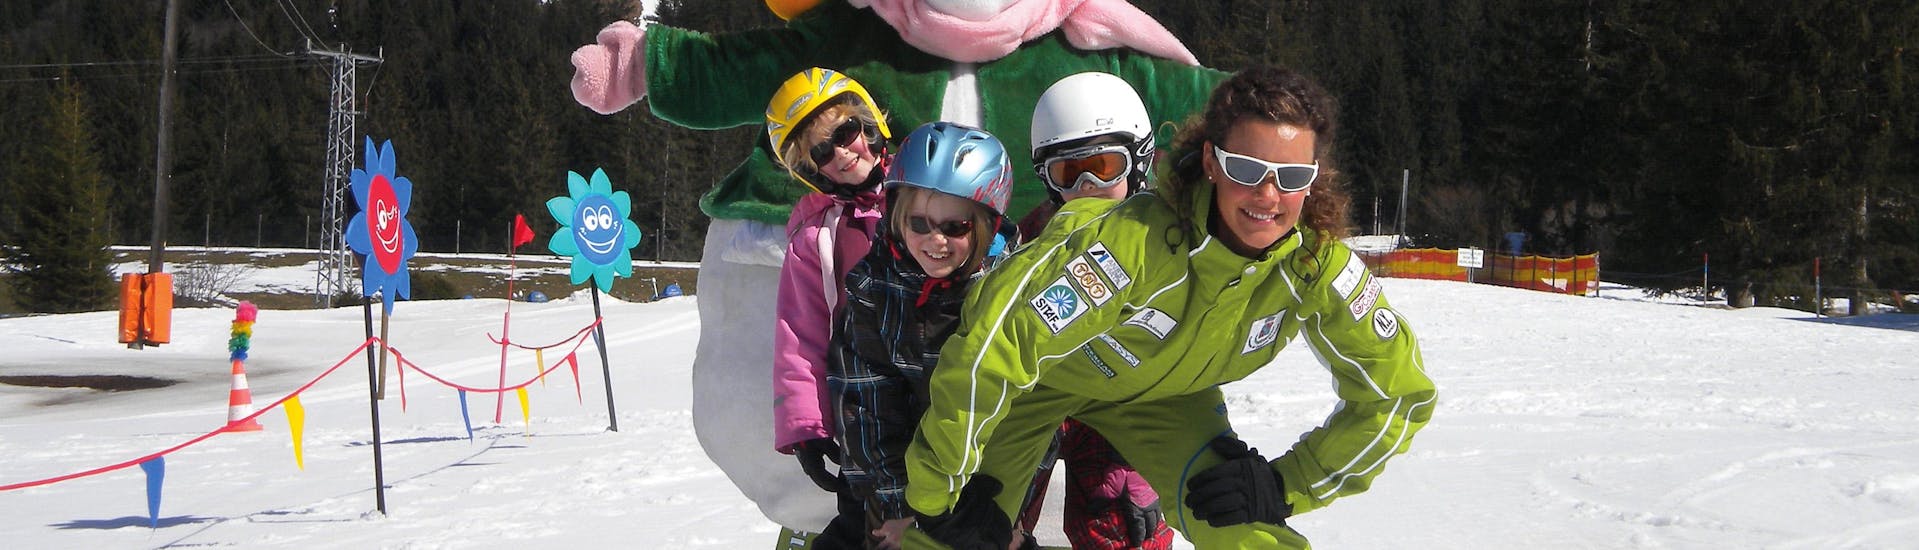 Kinder haben Spaß beim Skikurs für alle Stufen halbtags mit der Skischule Club Alpin in Grän.